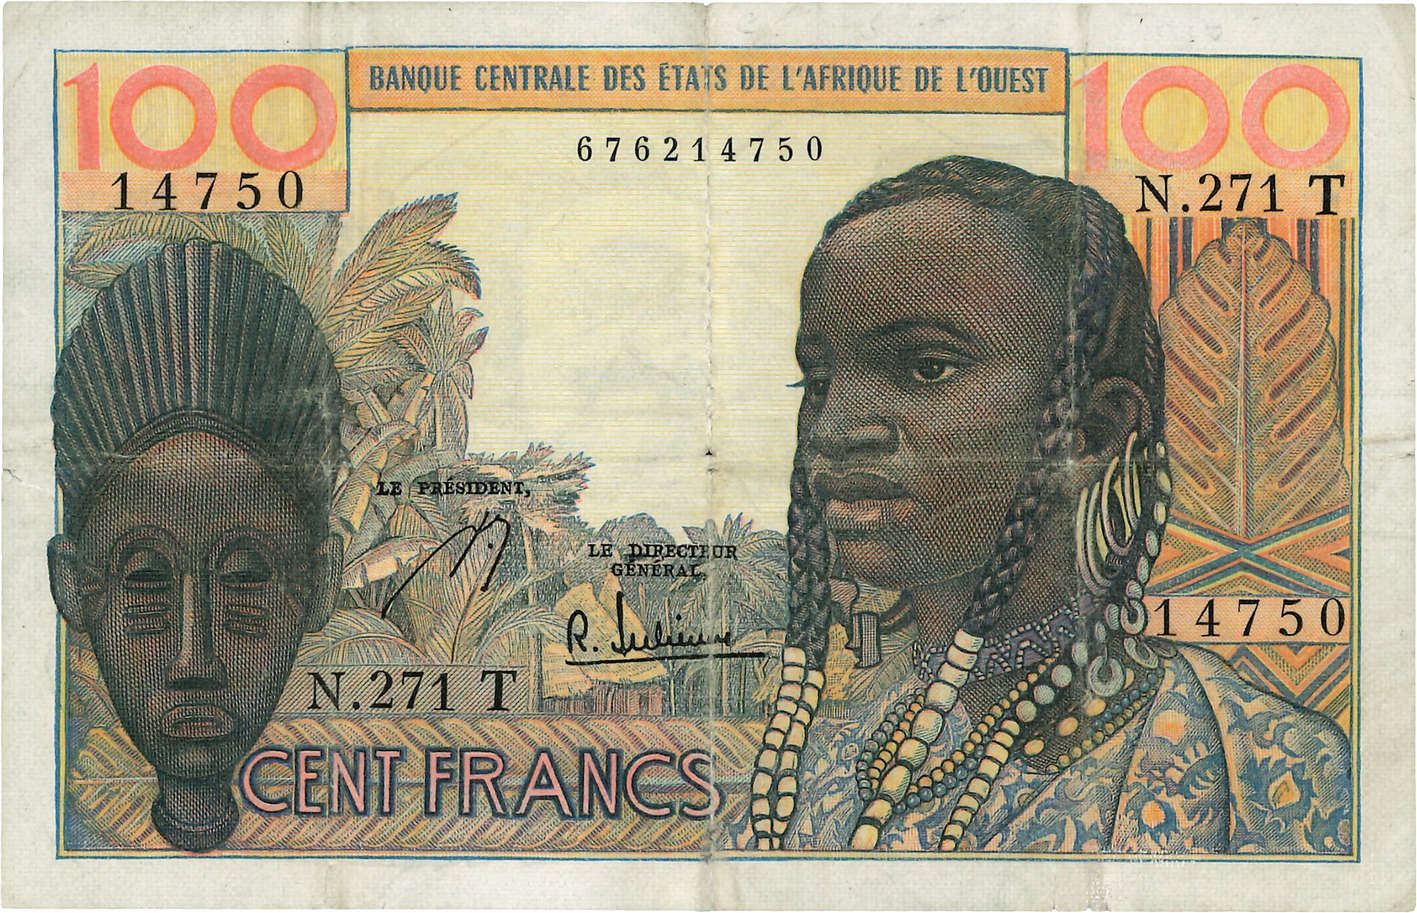 100 Francs WEST AFRIKANISCHE STAATEN  1965 P.801Tg fSS